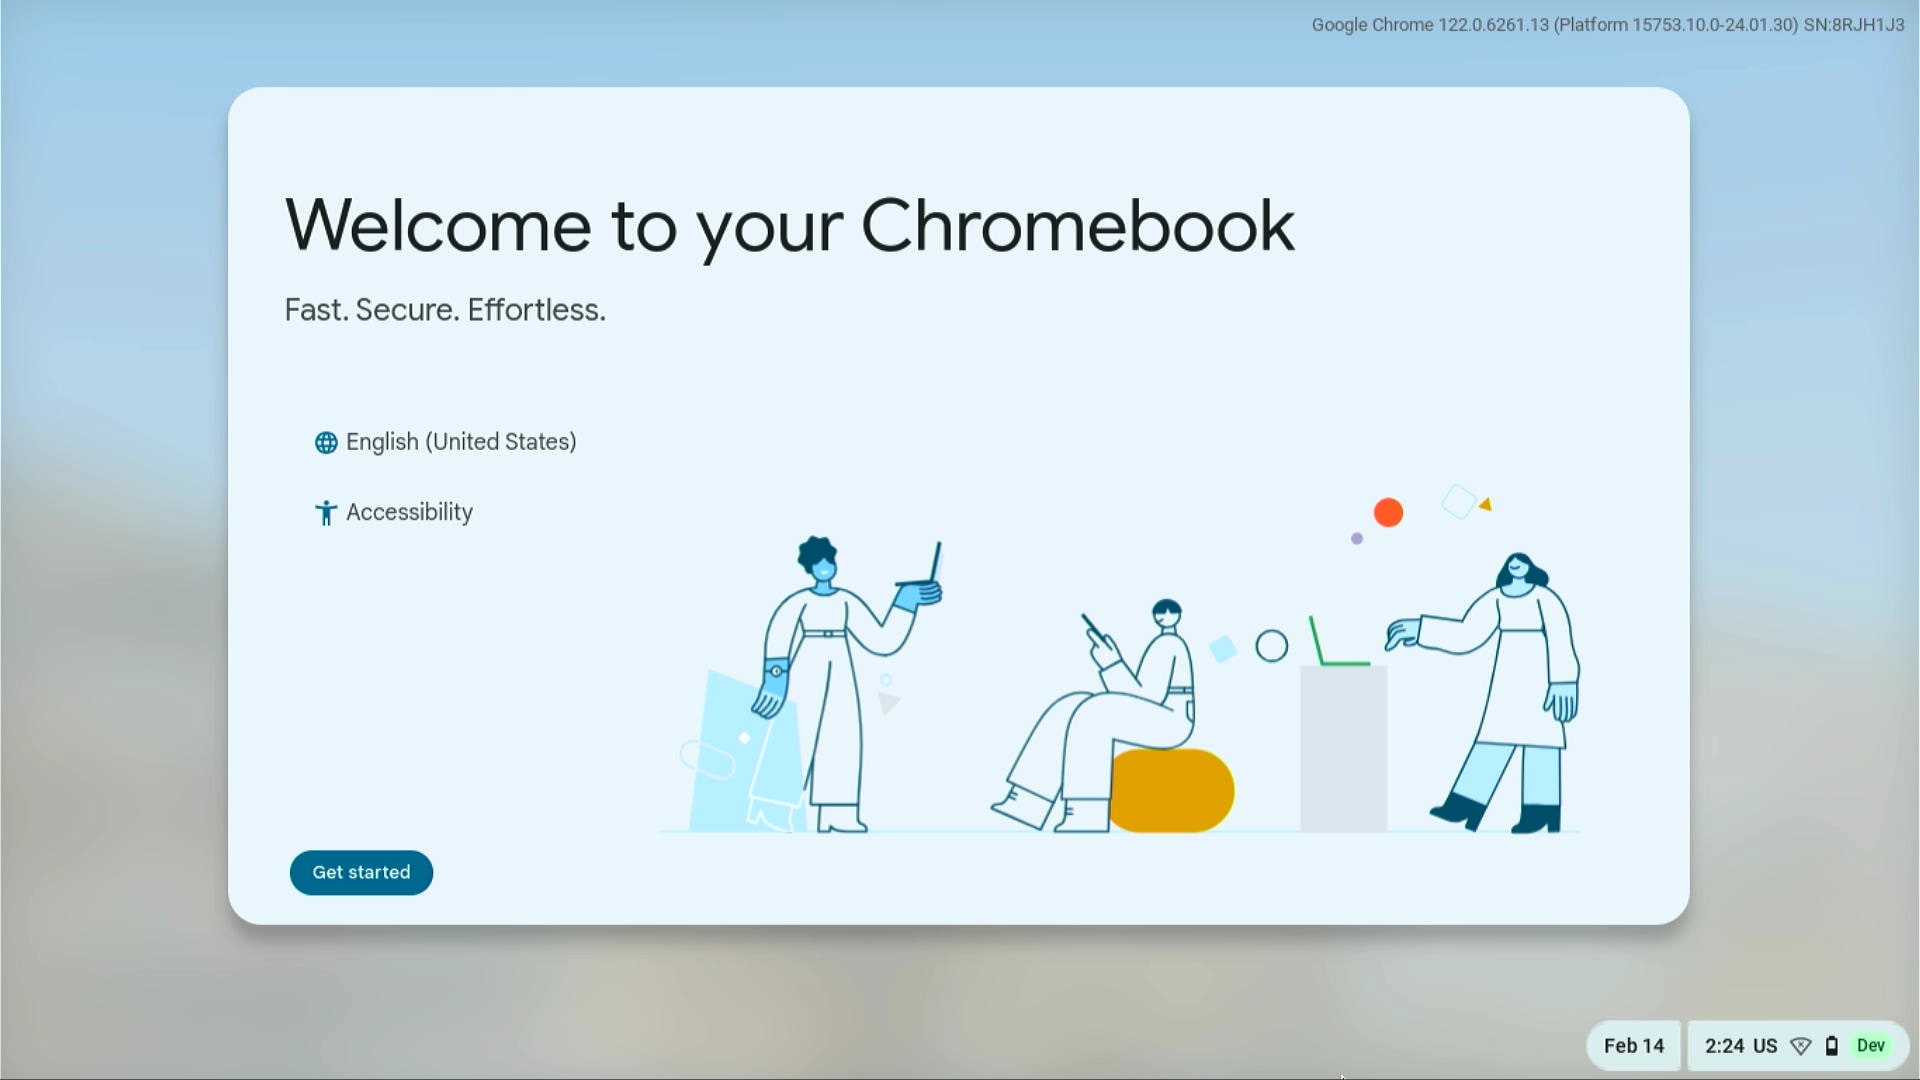 Einstellungen für Sprache und Barrierefreiheit auf dem Einrichtungsbildschirm des Chromebooks